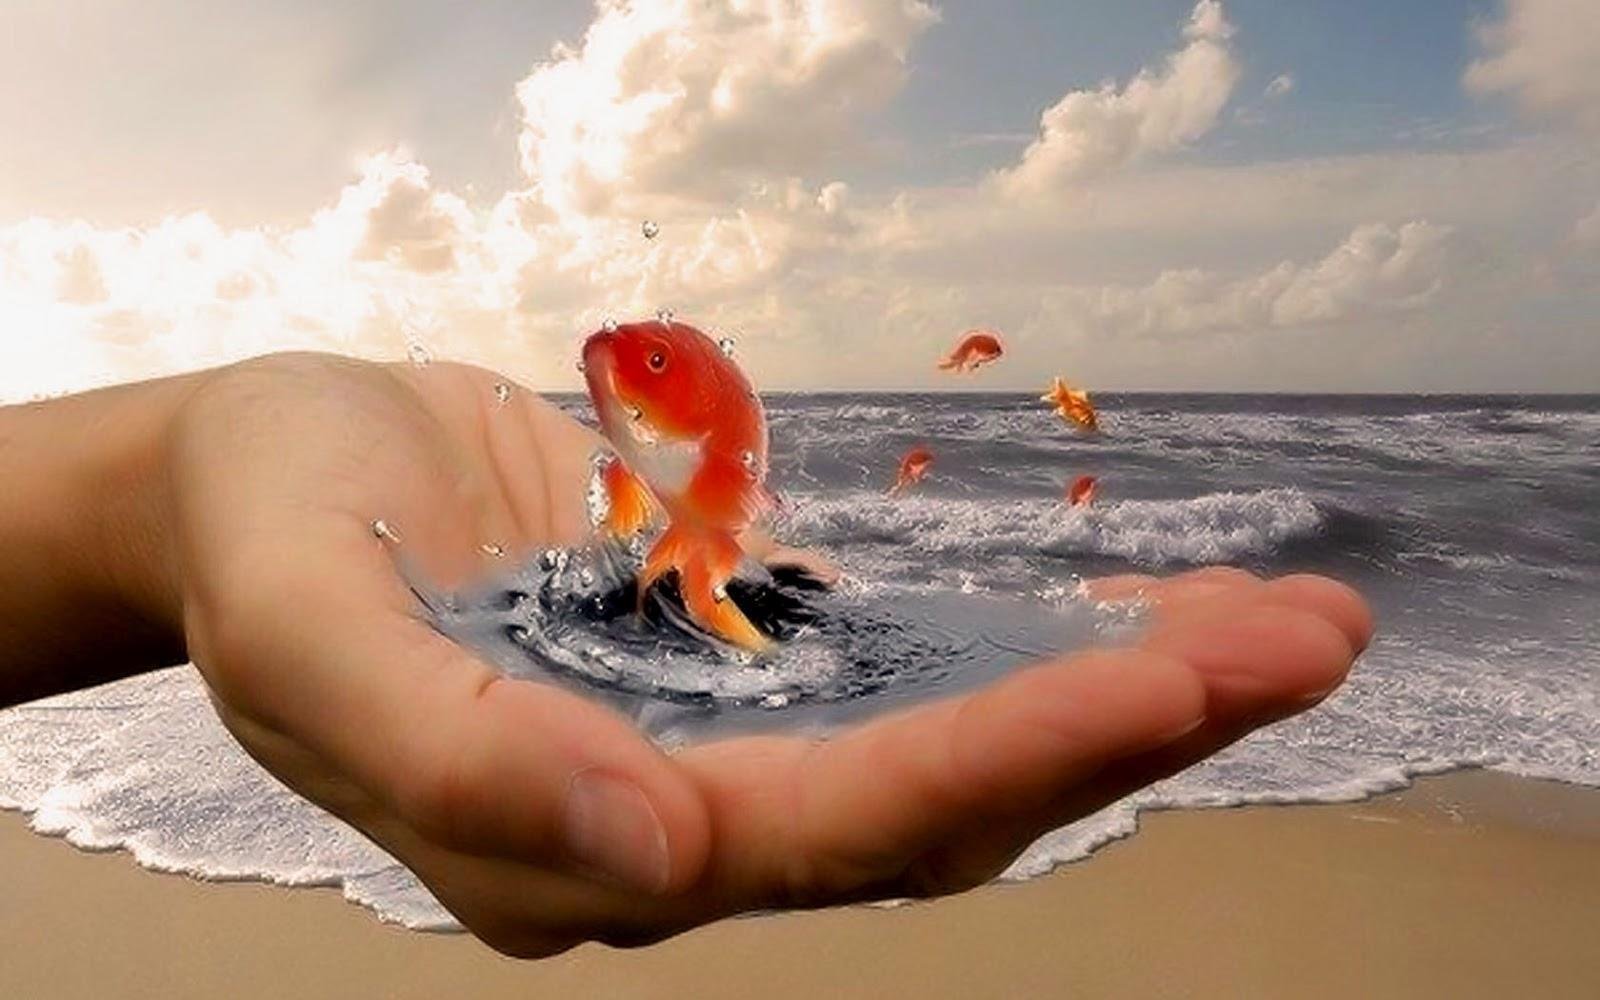 Счастье пришло как заслуга. Золотая рыбка в руках. Золотая рыбка исполнение желаний. Добро у моря. Золотая рыбка исполняет желания.